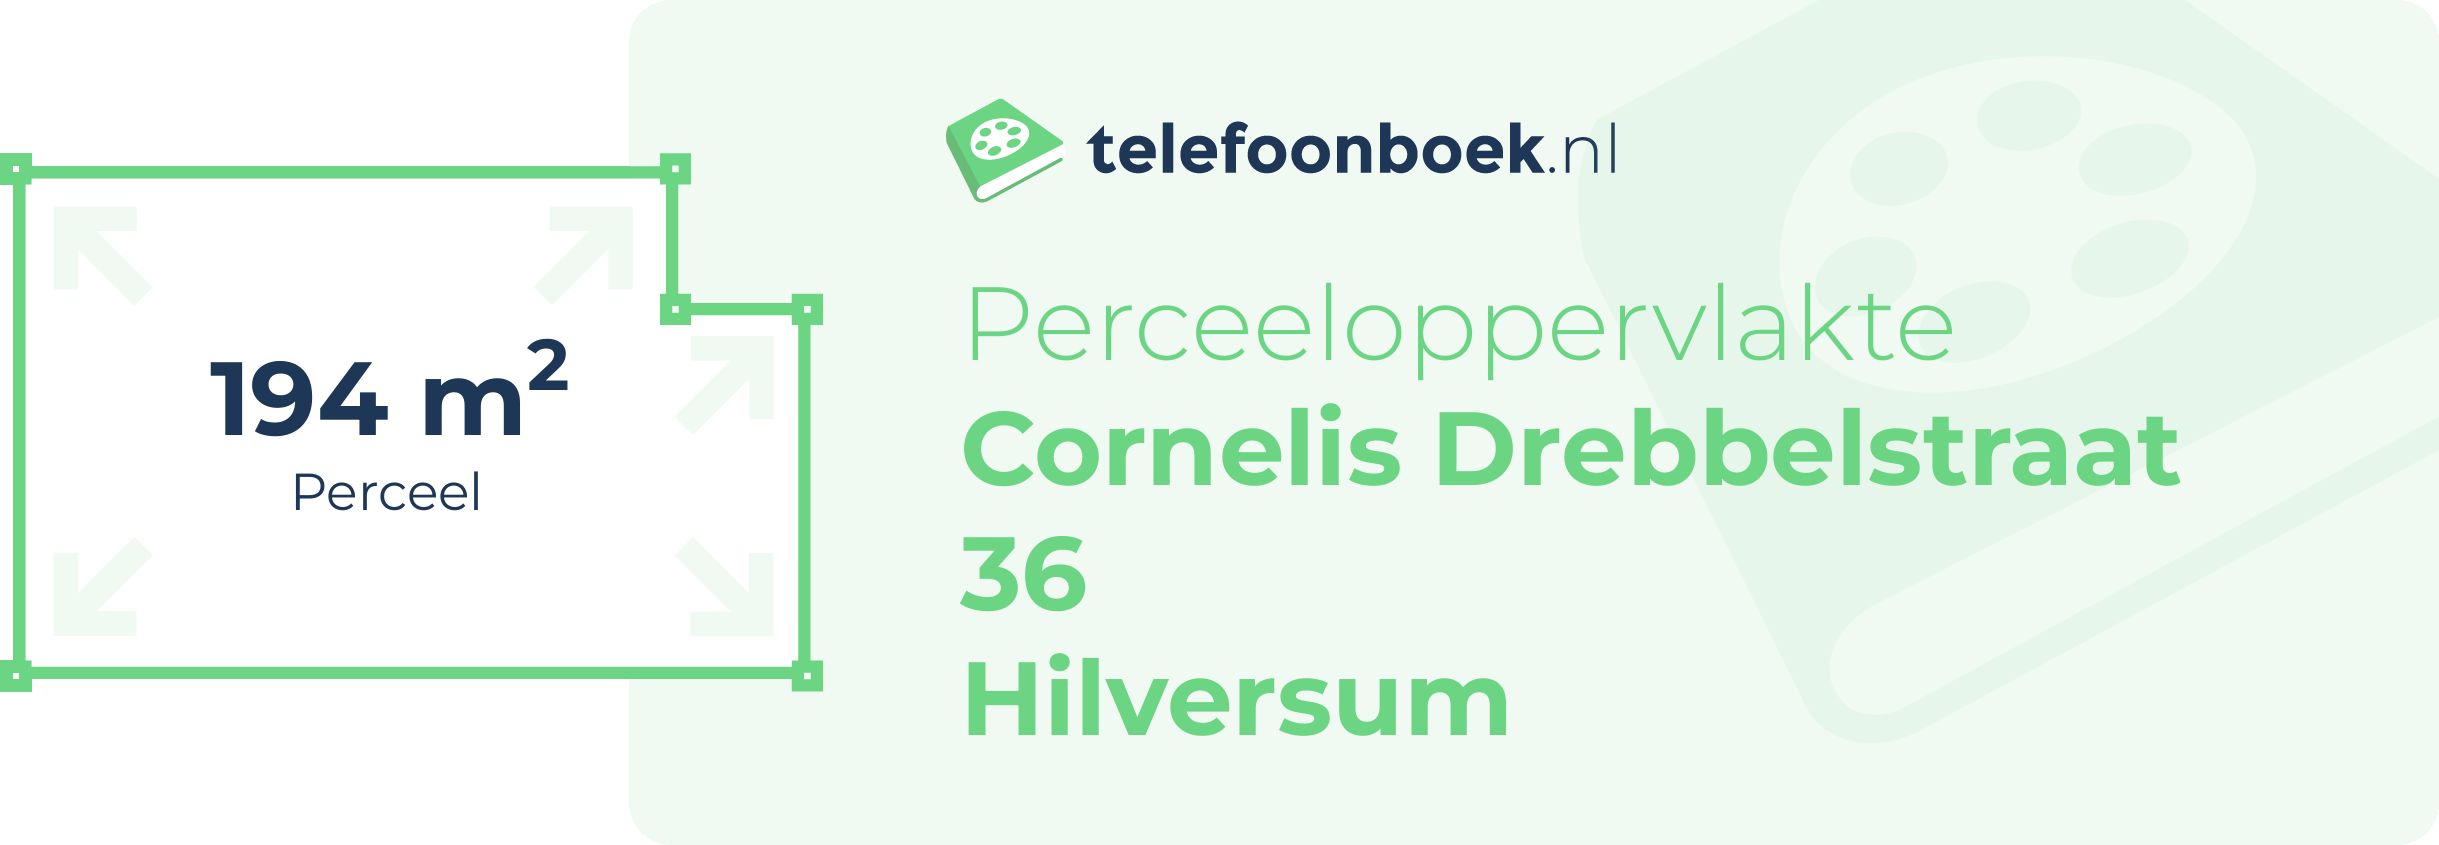 Perceeloppervlakte Cornelis Drebbelstraat 36 Hilversum